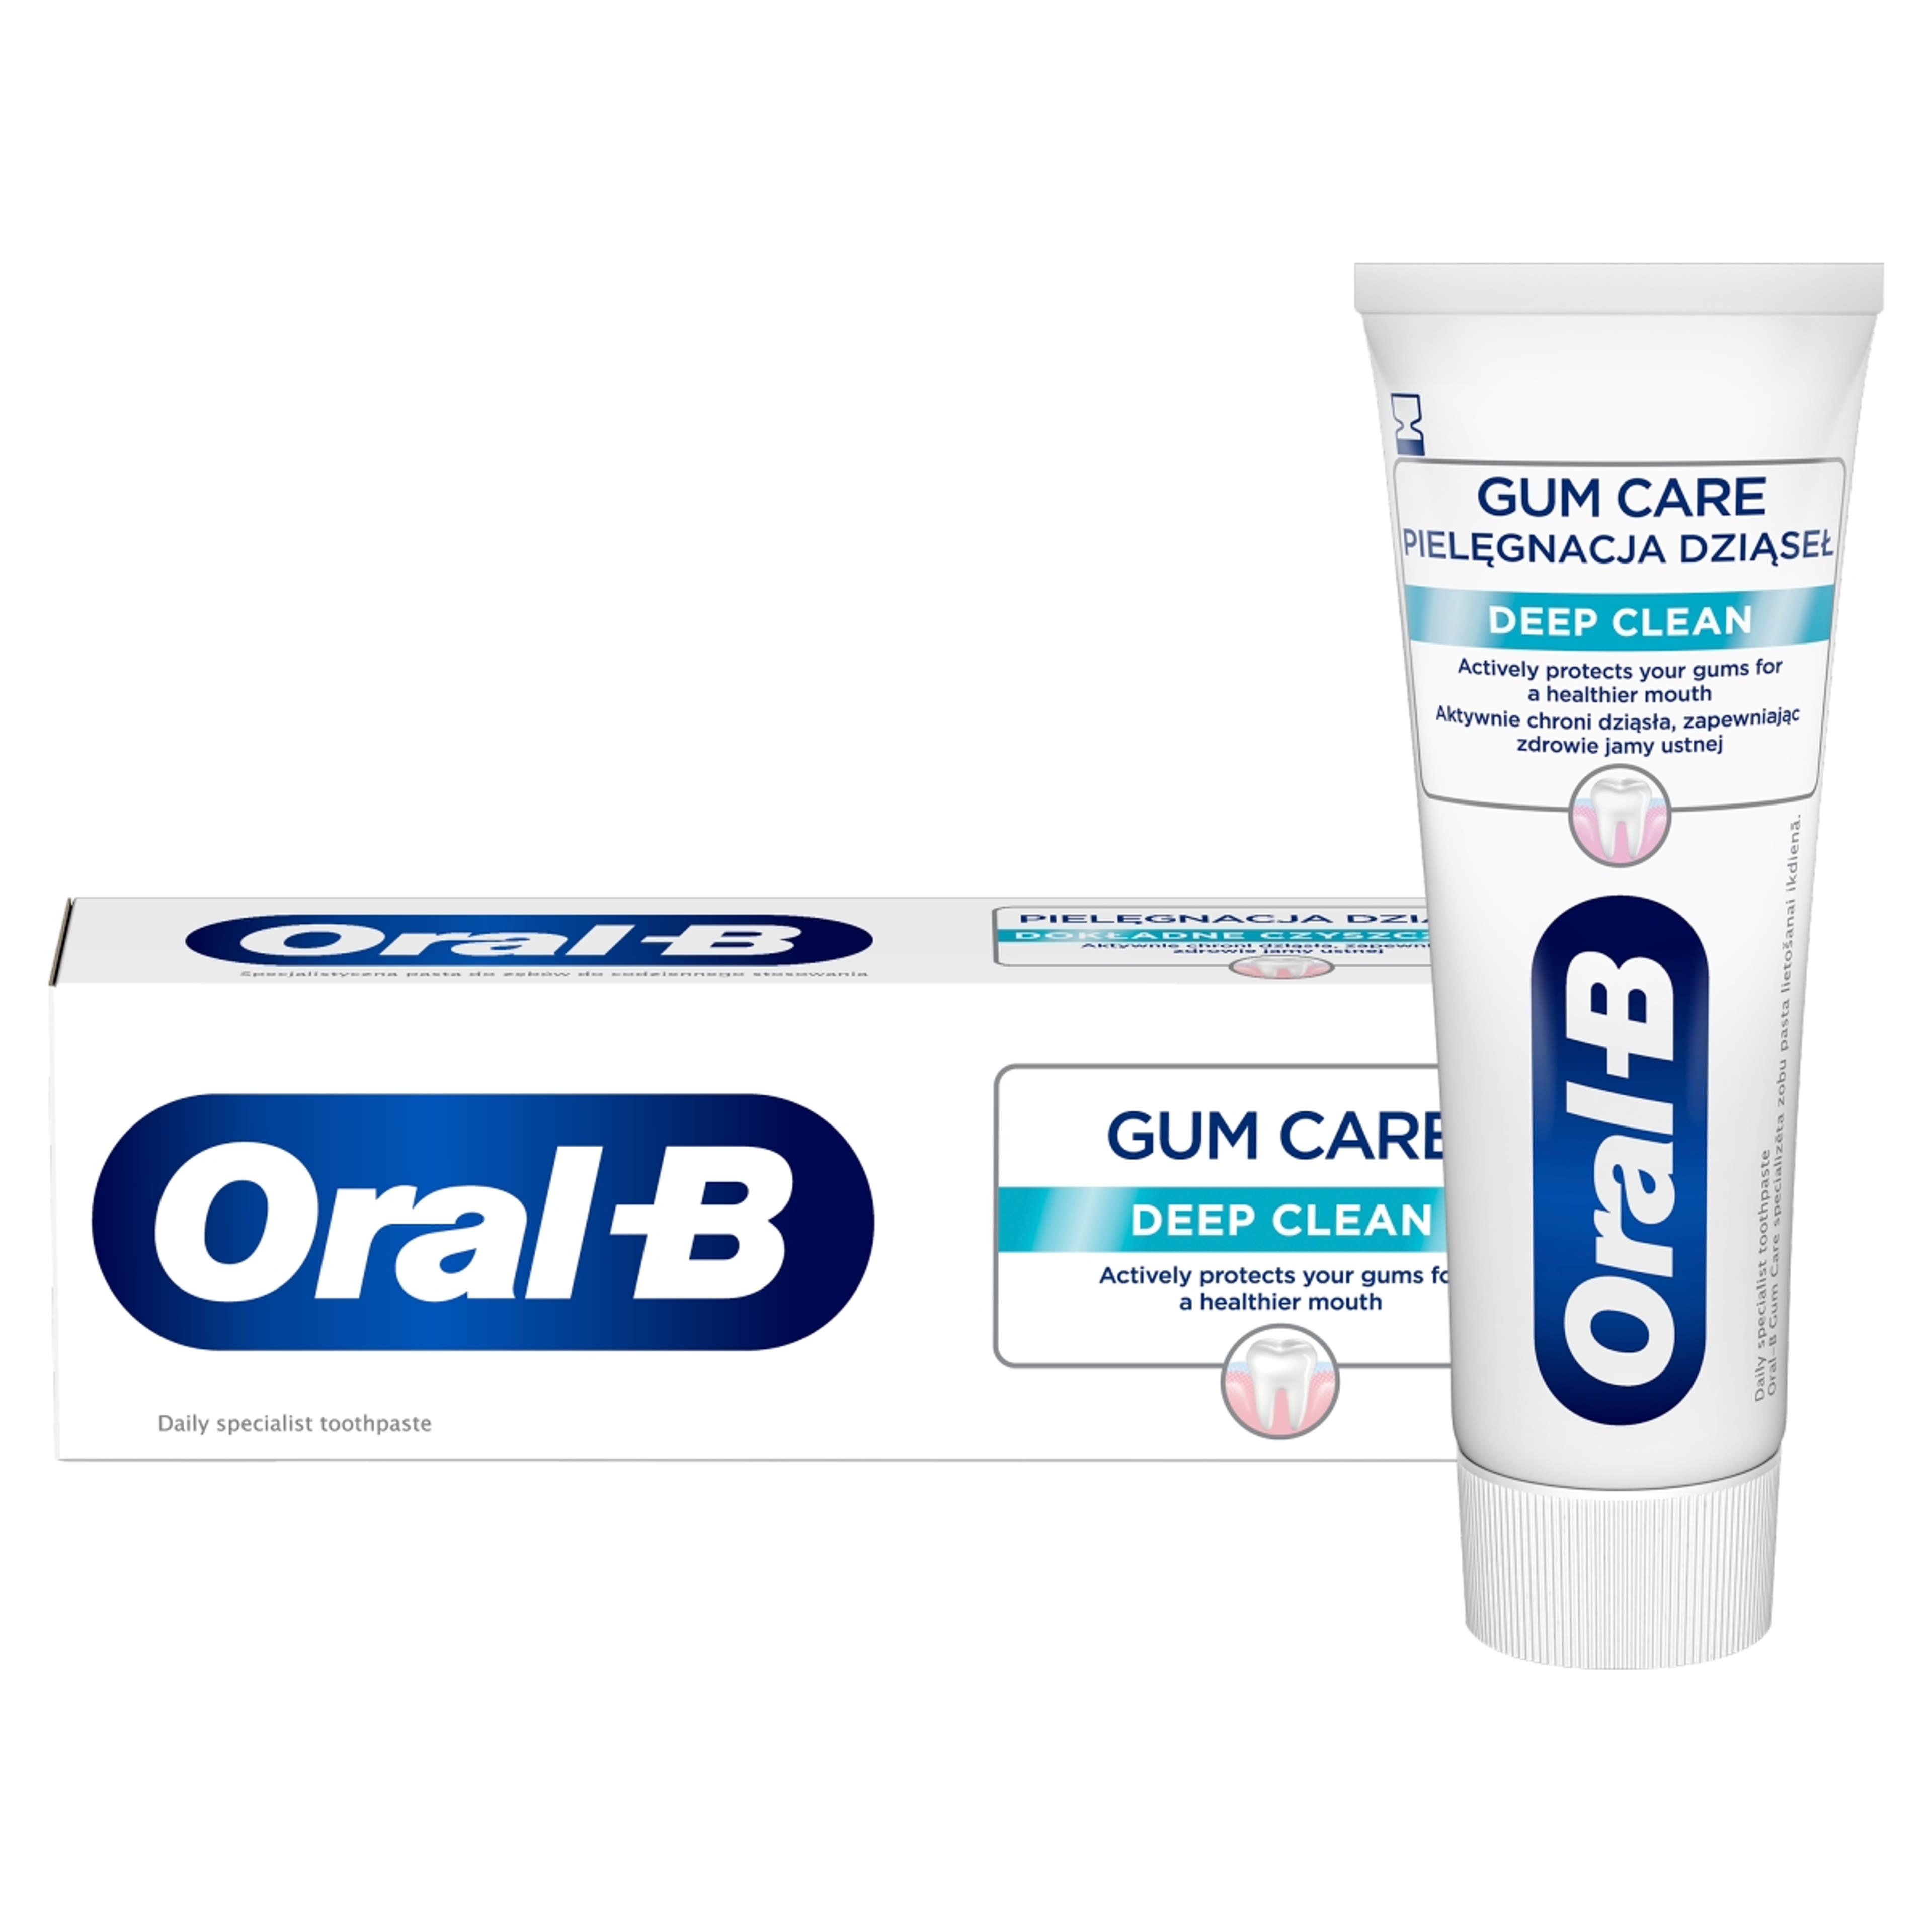 Oral-B Gum Care Deep Clean fogkrém - 65 ml-2